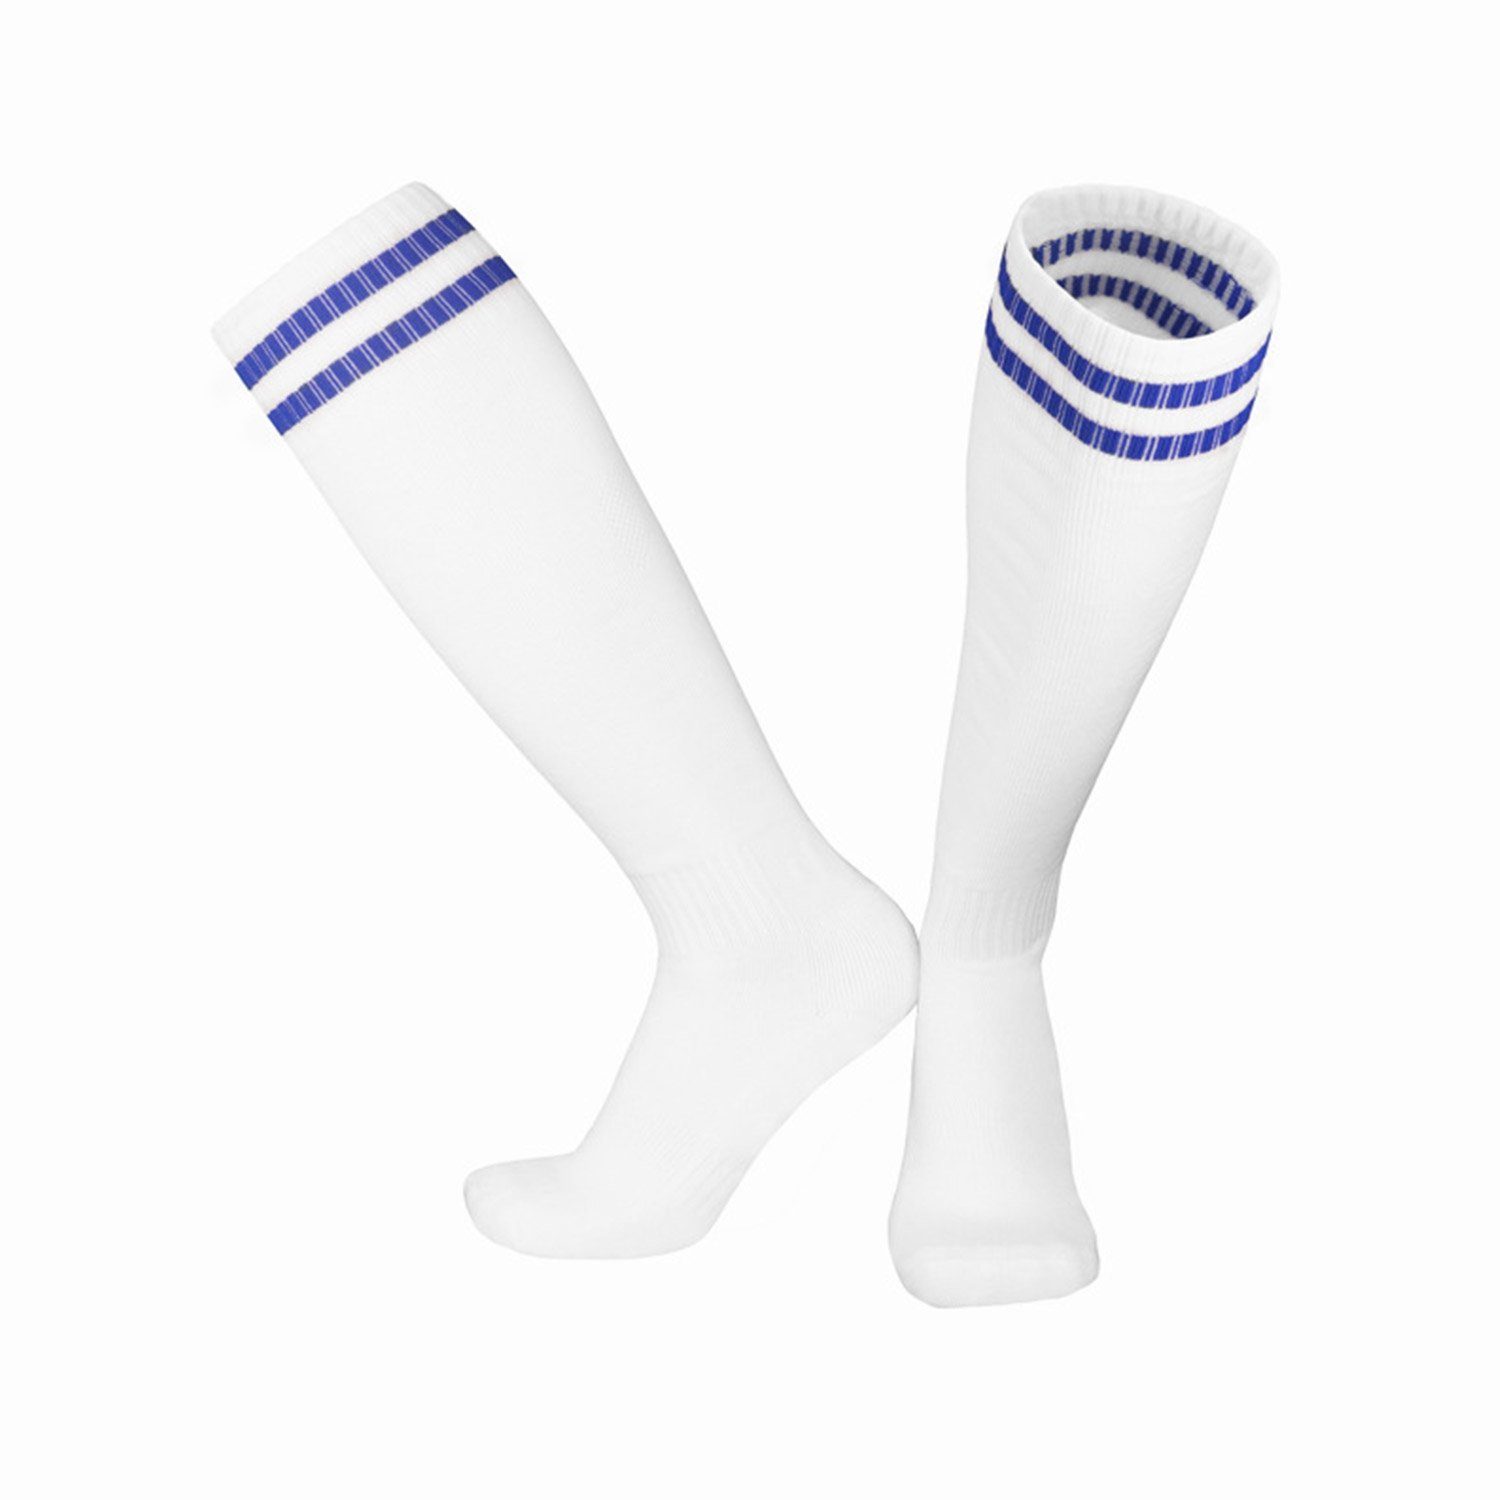 MAGICSHE Sportsocken Kinderfußball Weiß2 Fußballtraining, Erwachsene -Socken Bewegung Socken Socken Fadenfäden für und Training Neutral Laufen